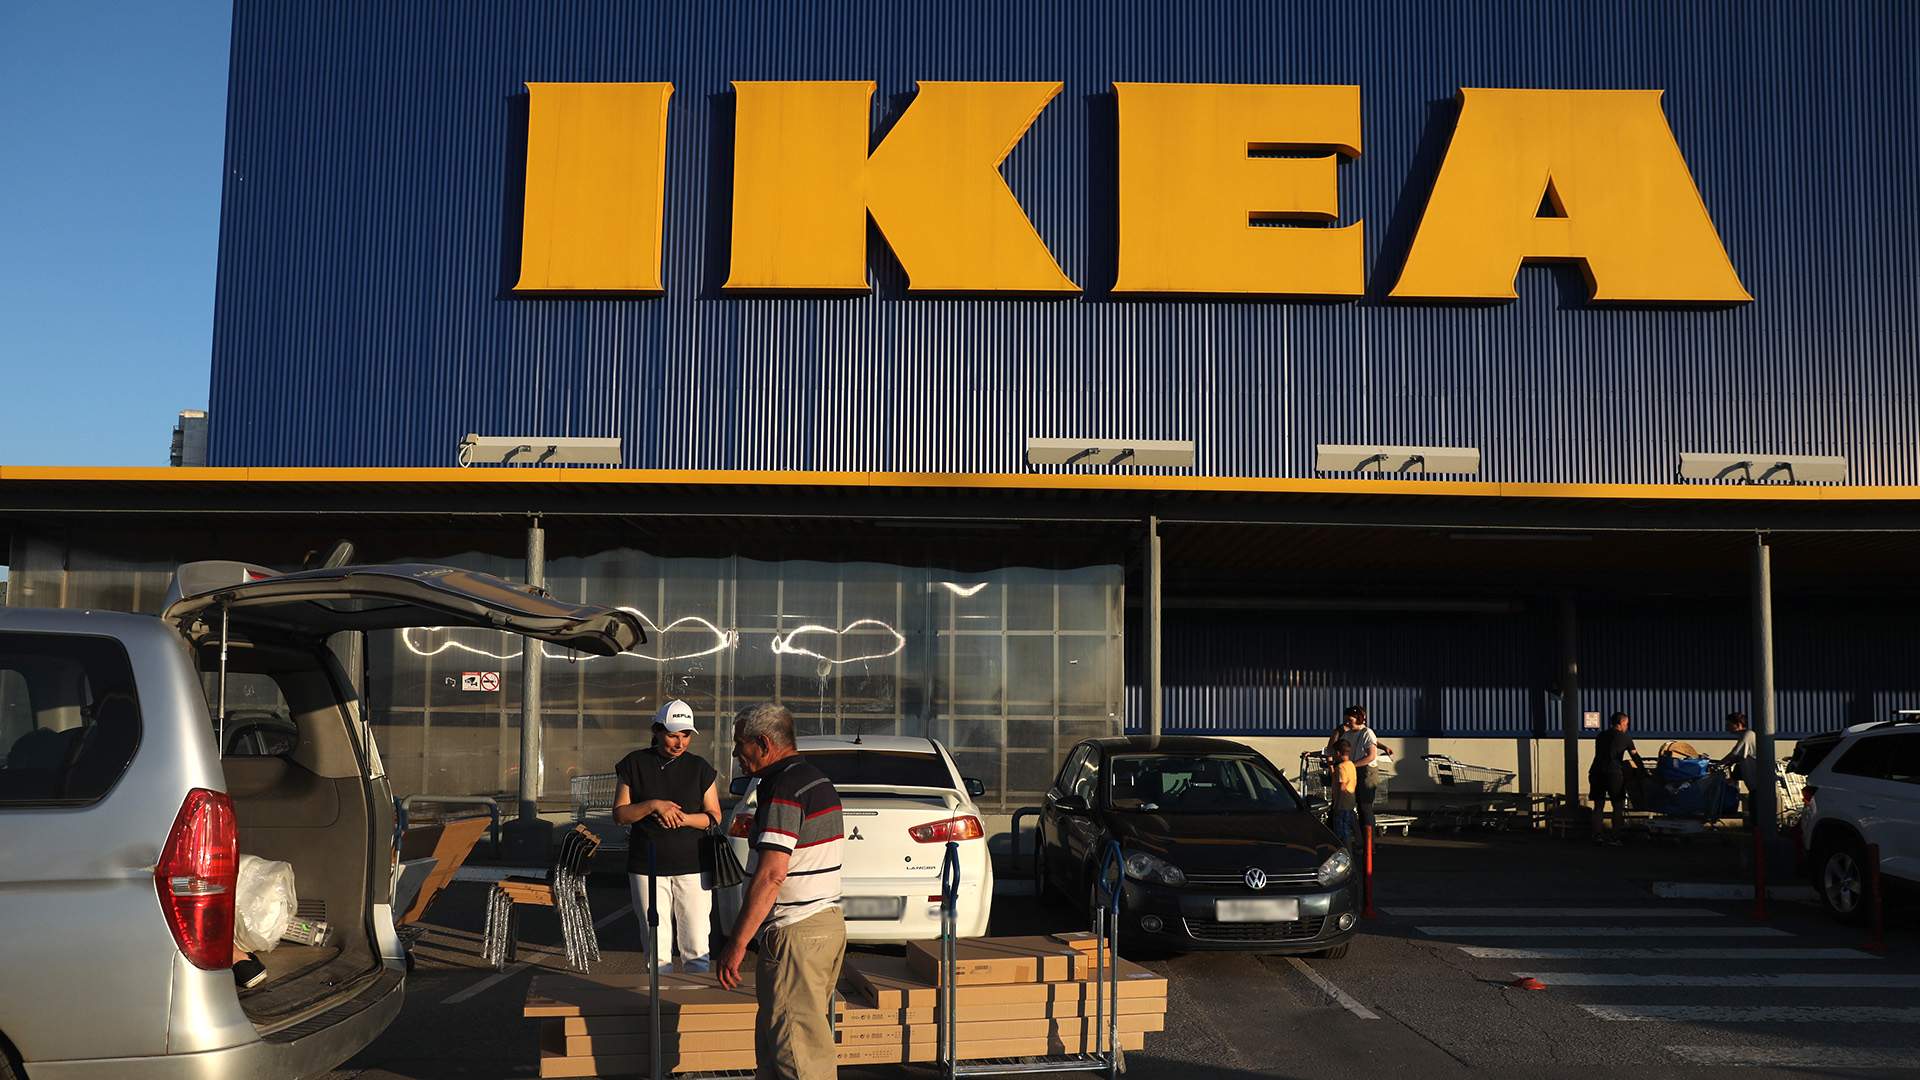 IKEA завершит онлайн-распродажу в России 15 августа